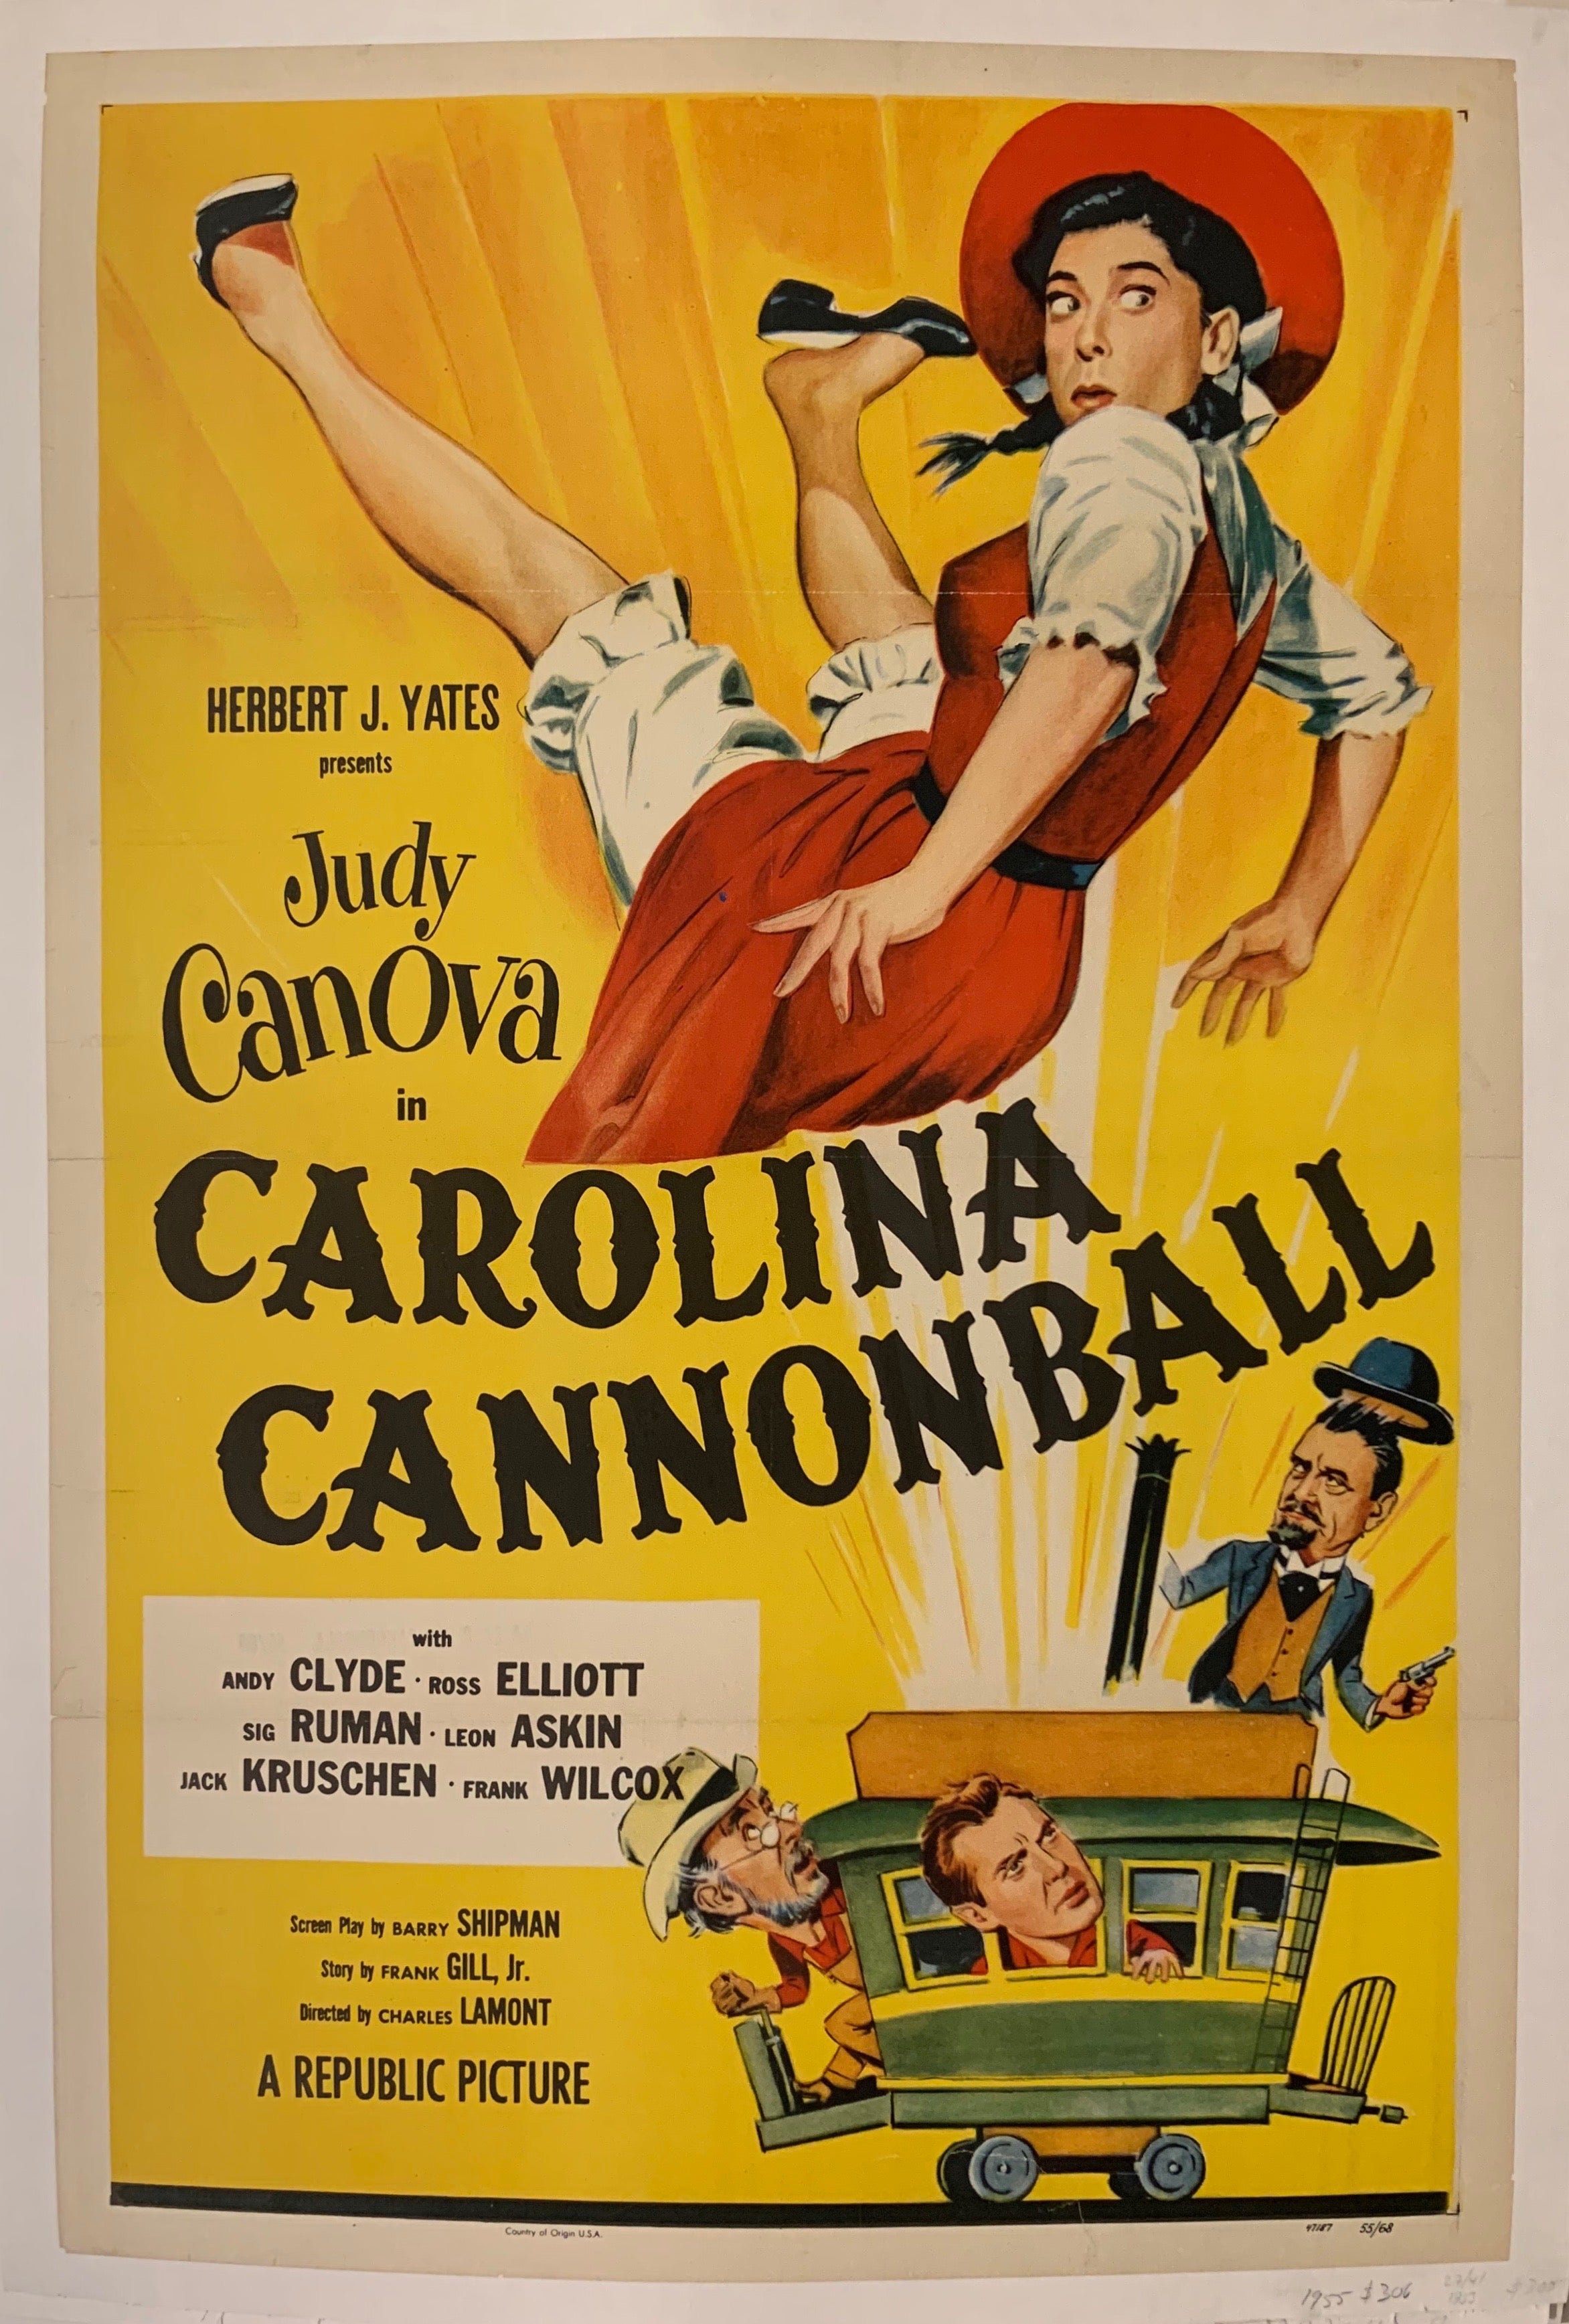 Carolina Cannonball